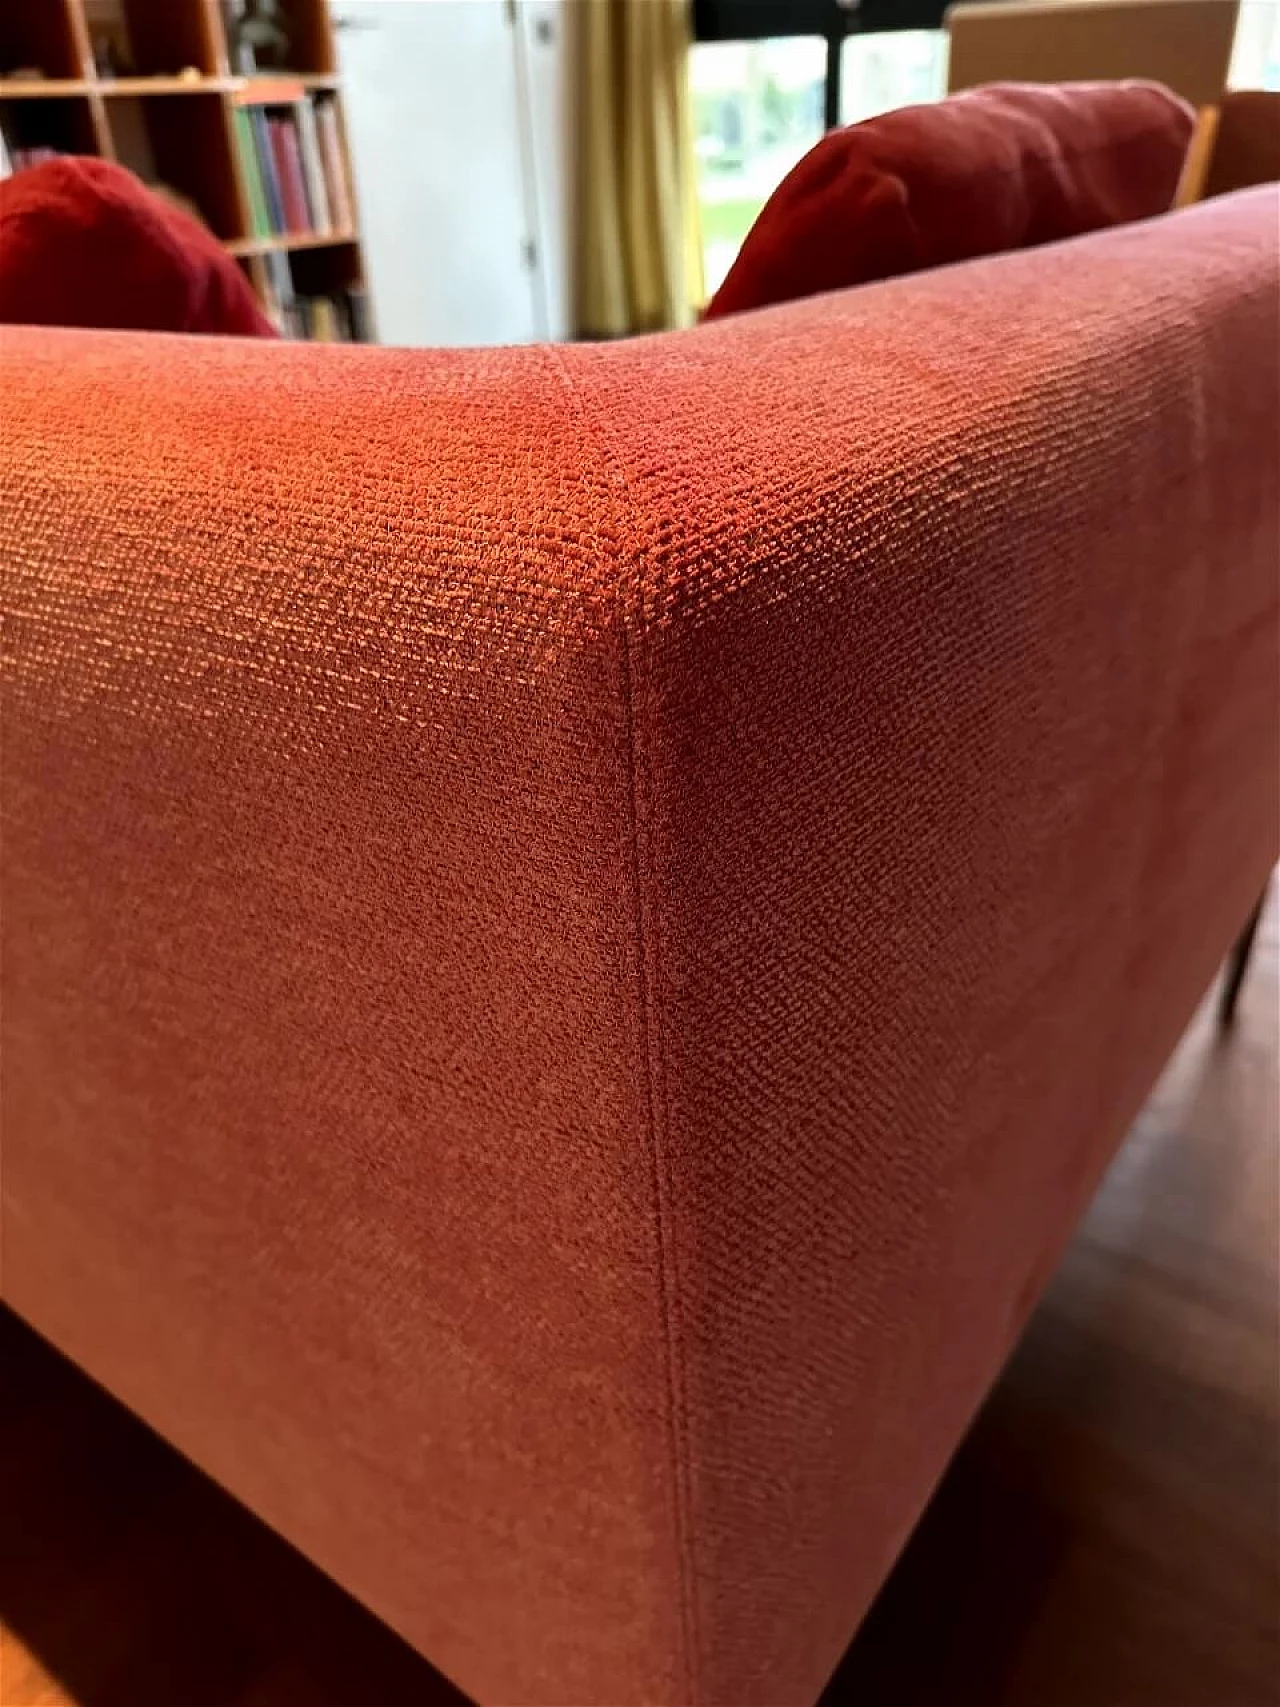 CH228 Charles sofa in red Maxalto-Cat cotton by Antonio Citterio for B&B Italia 26